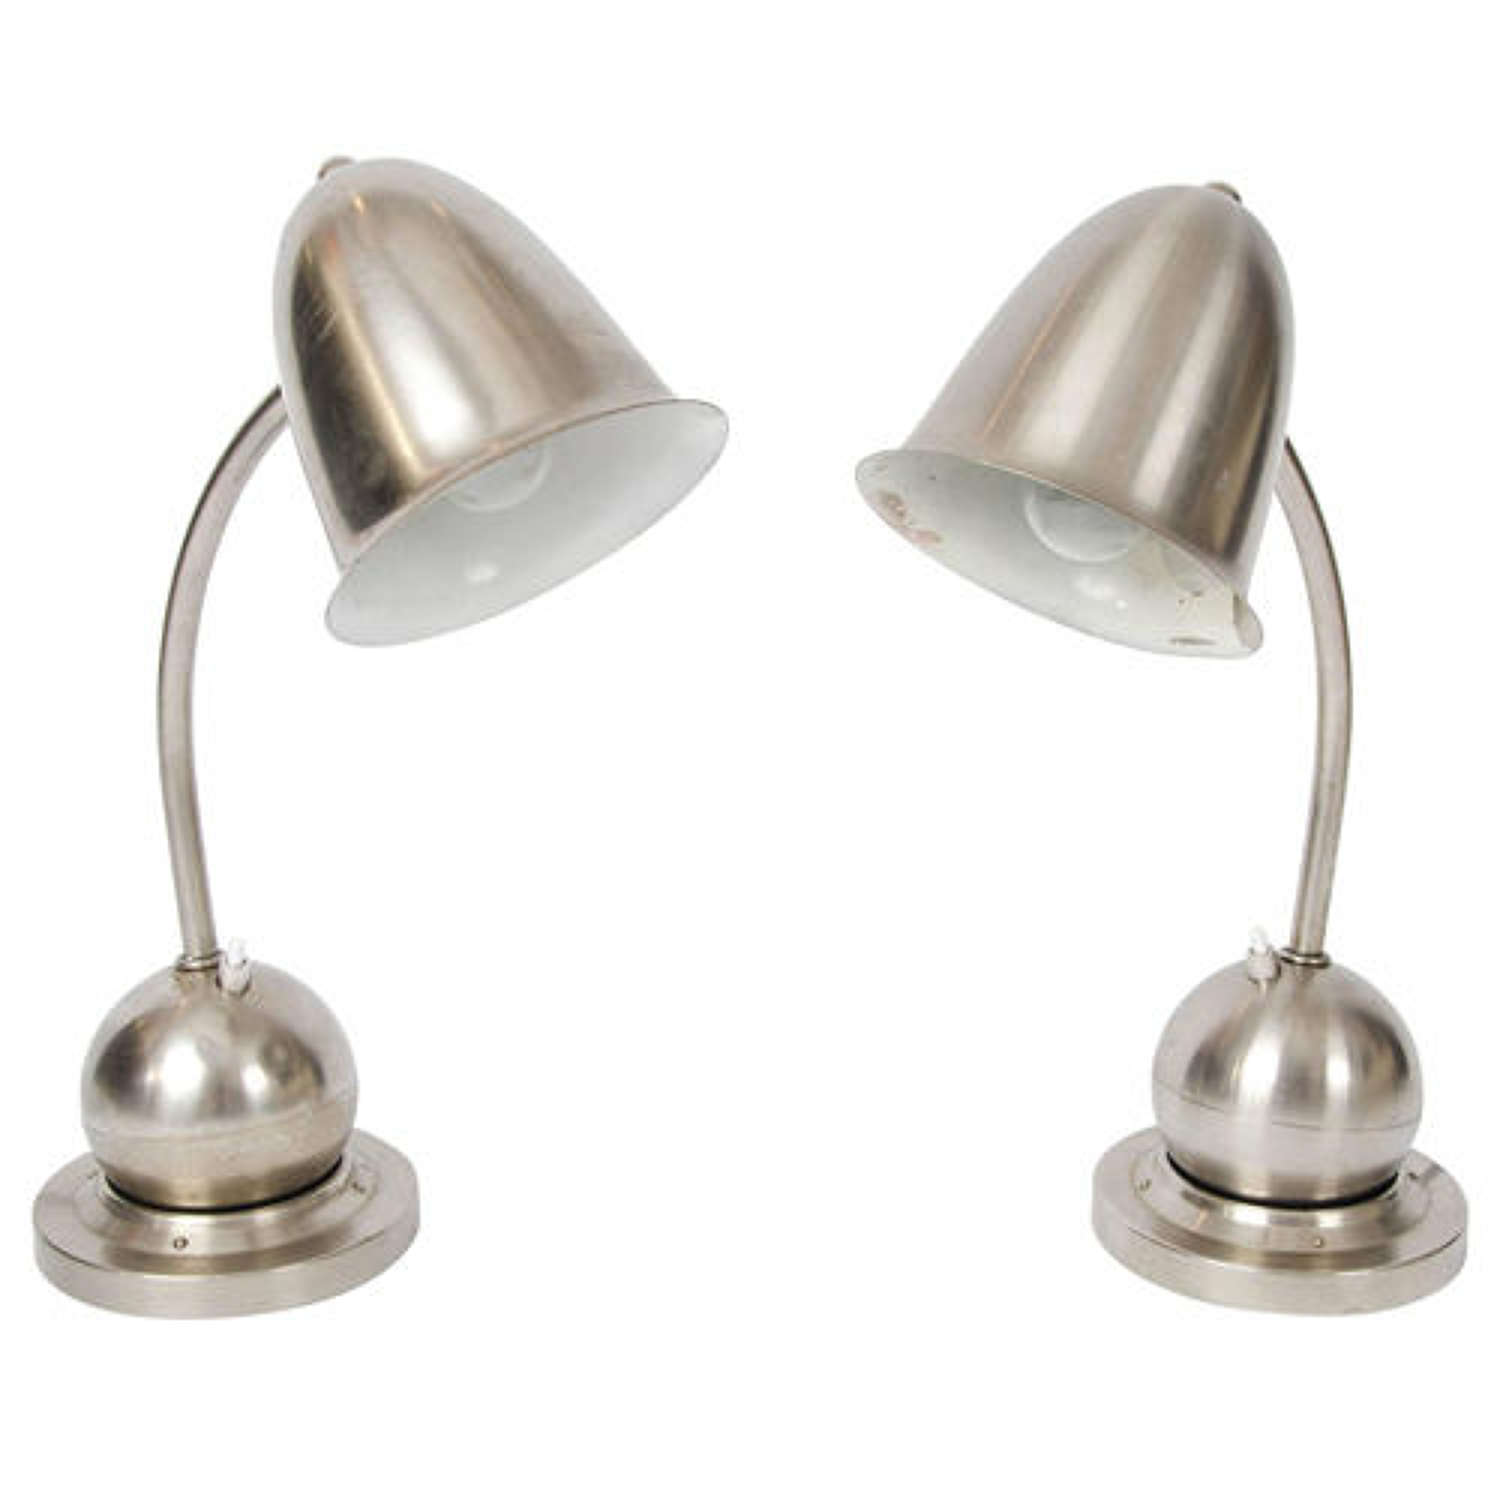 Modernist Pair of Table Lamps Nickel by Daalderop, 1930s